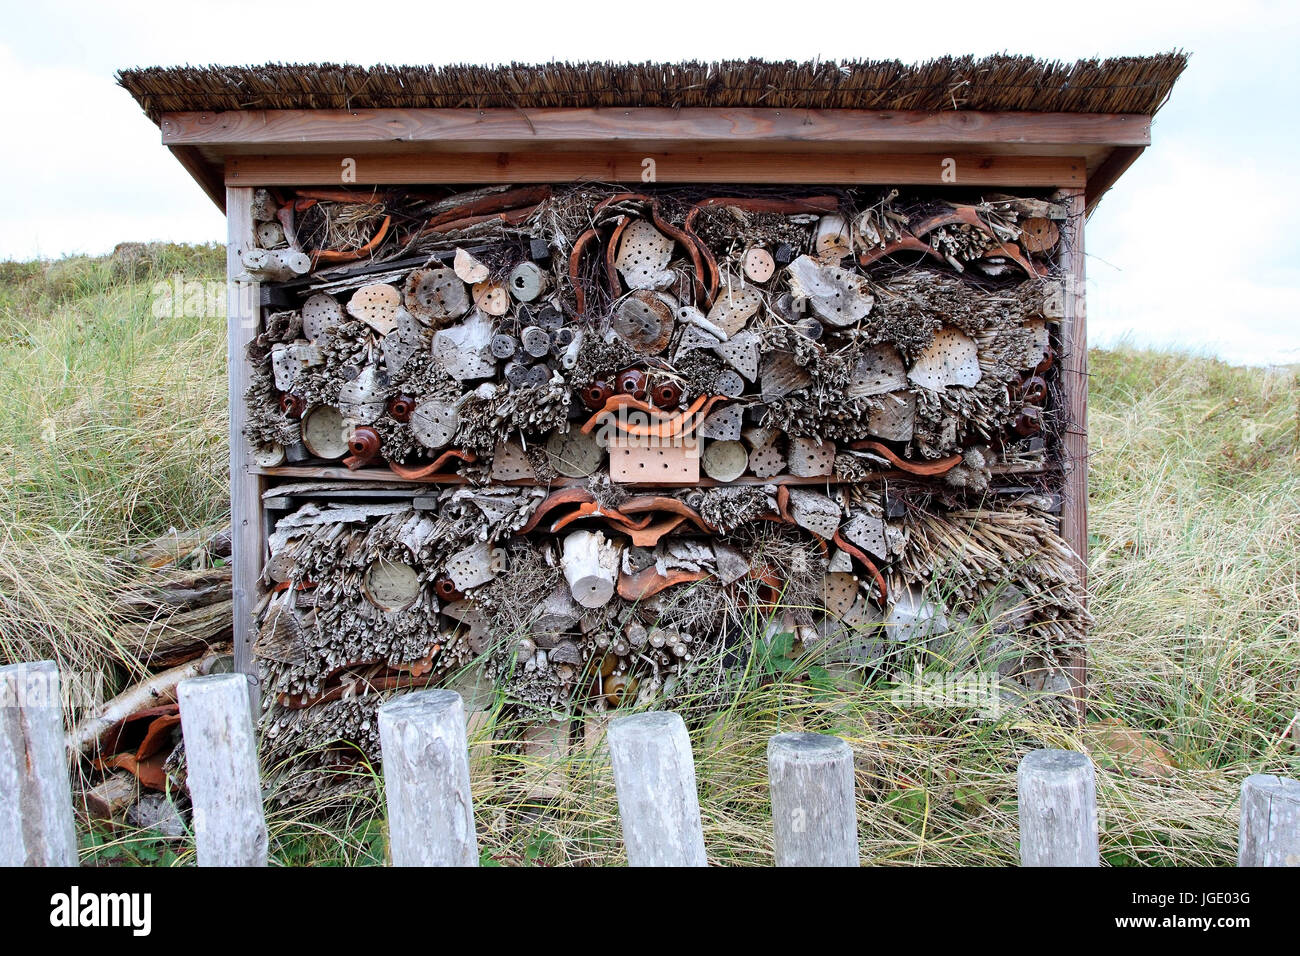 Nesting arrangement and the following ?? r bees and bumblebees, Nistanlage für Bienen und Hummeln Stock Photo